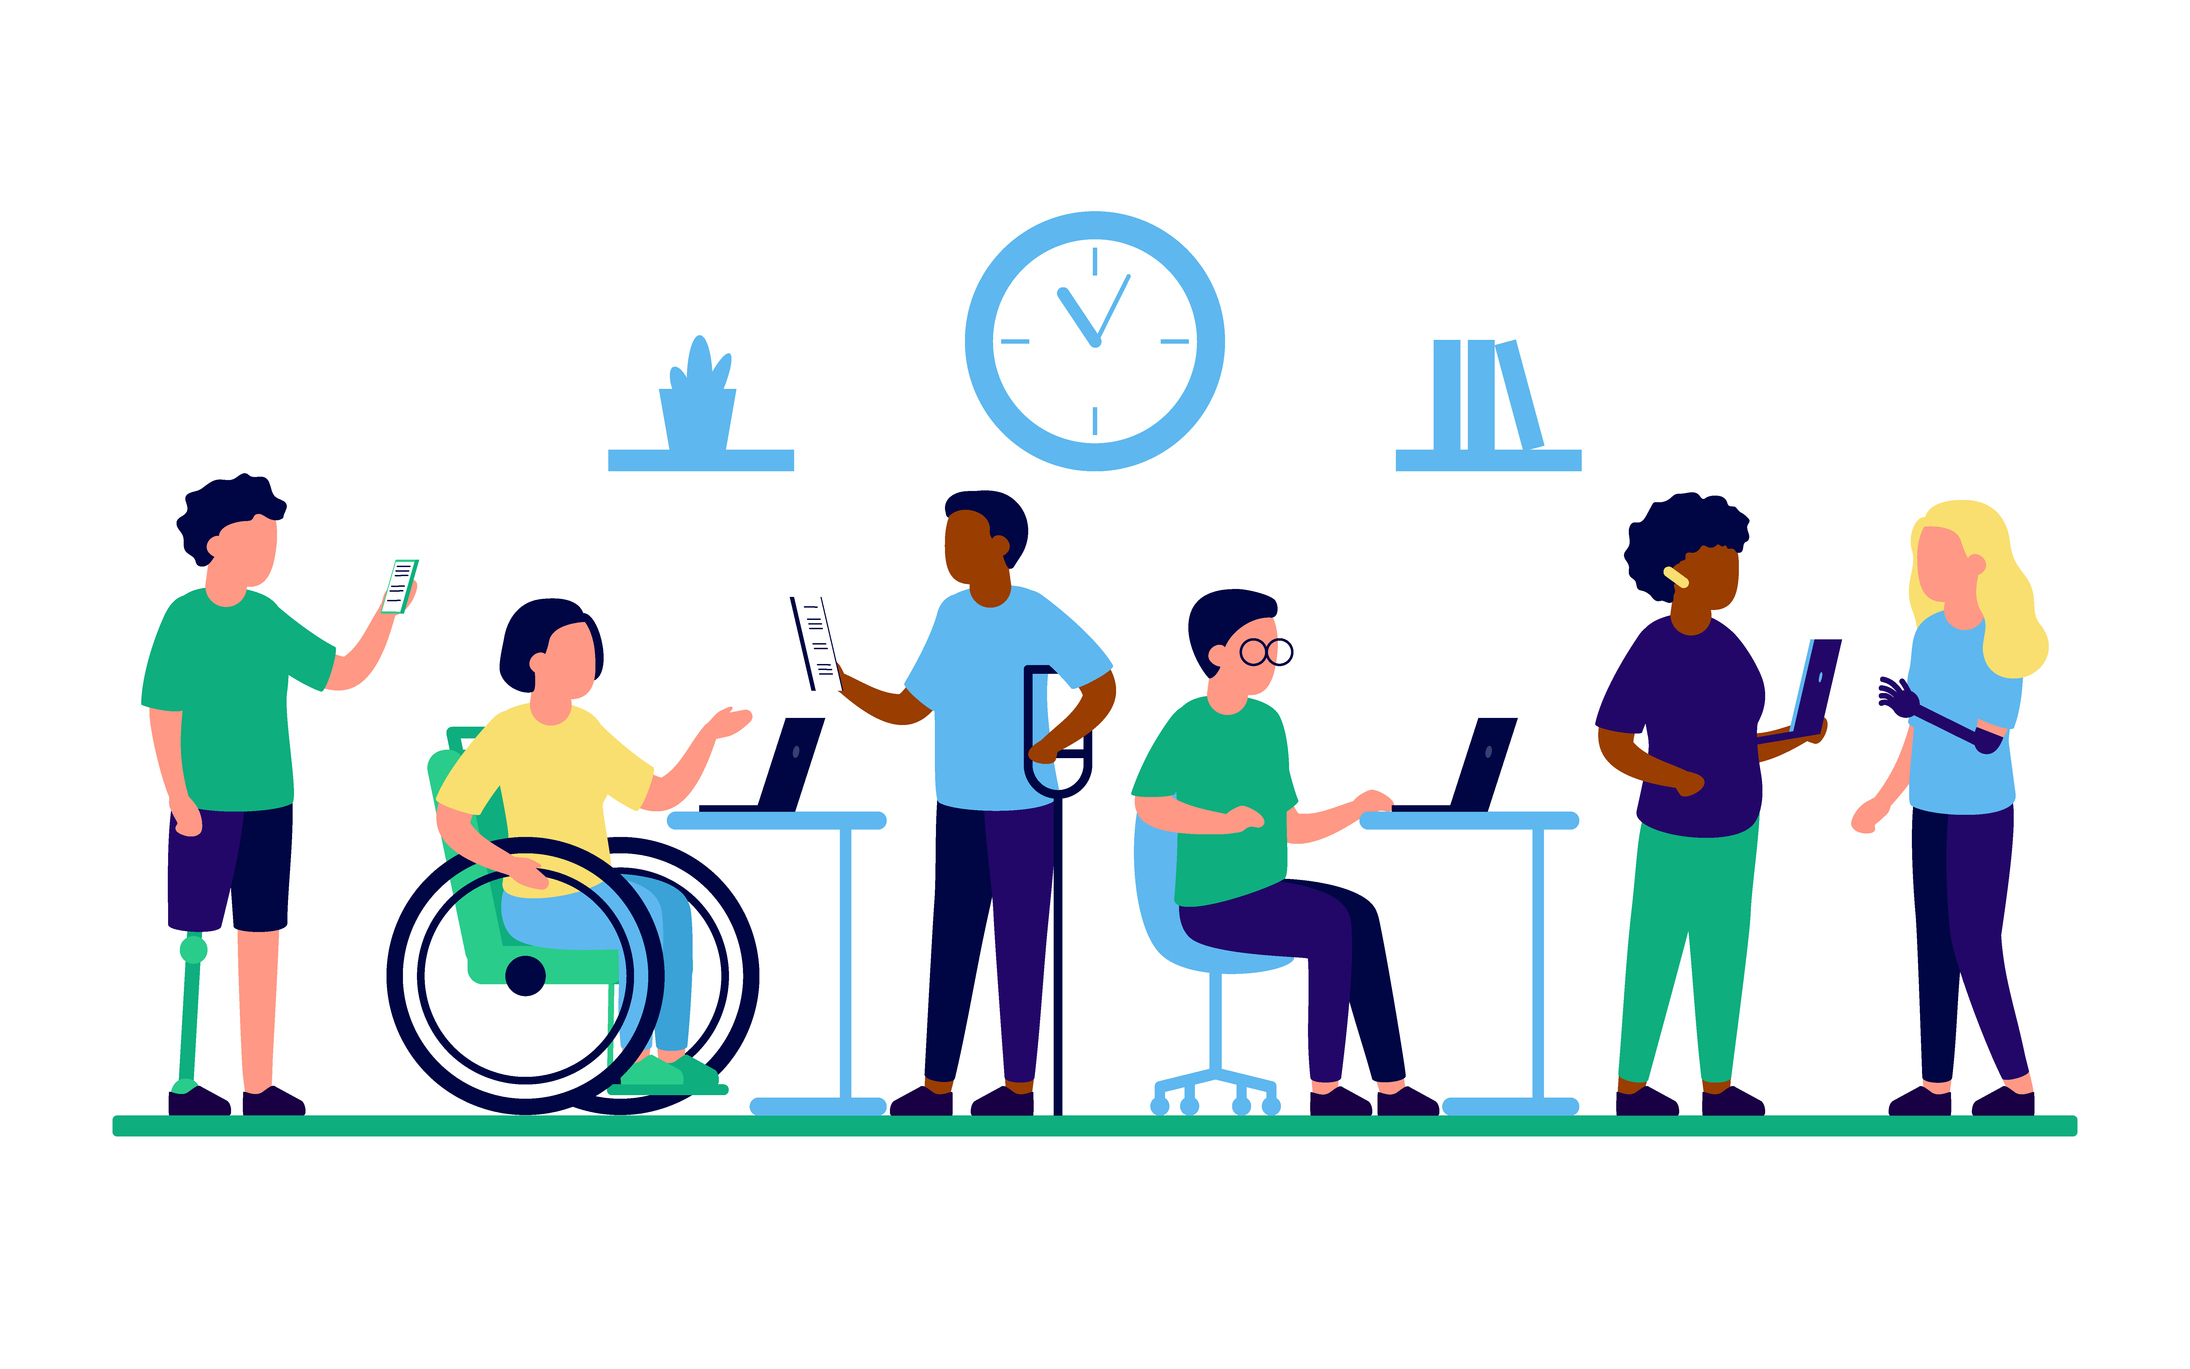 Employee people with disabilities and inclusion work together in office (Les employés handicapés et l'inclusion travaillent ensemble au bureau).